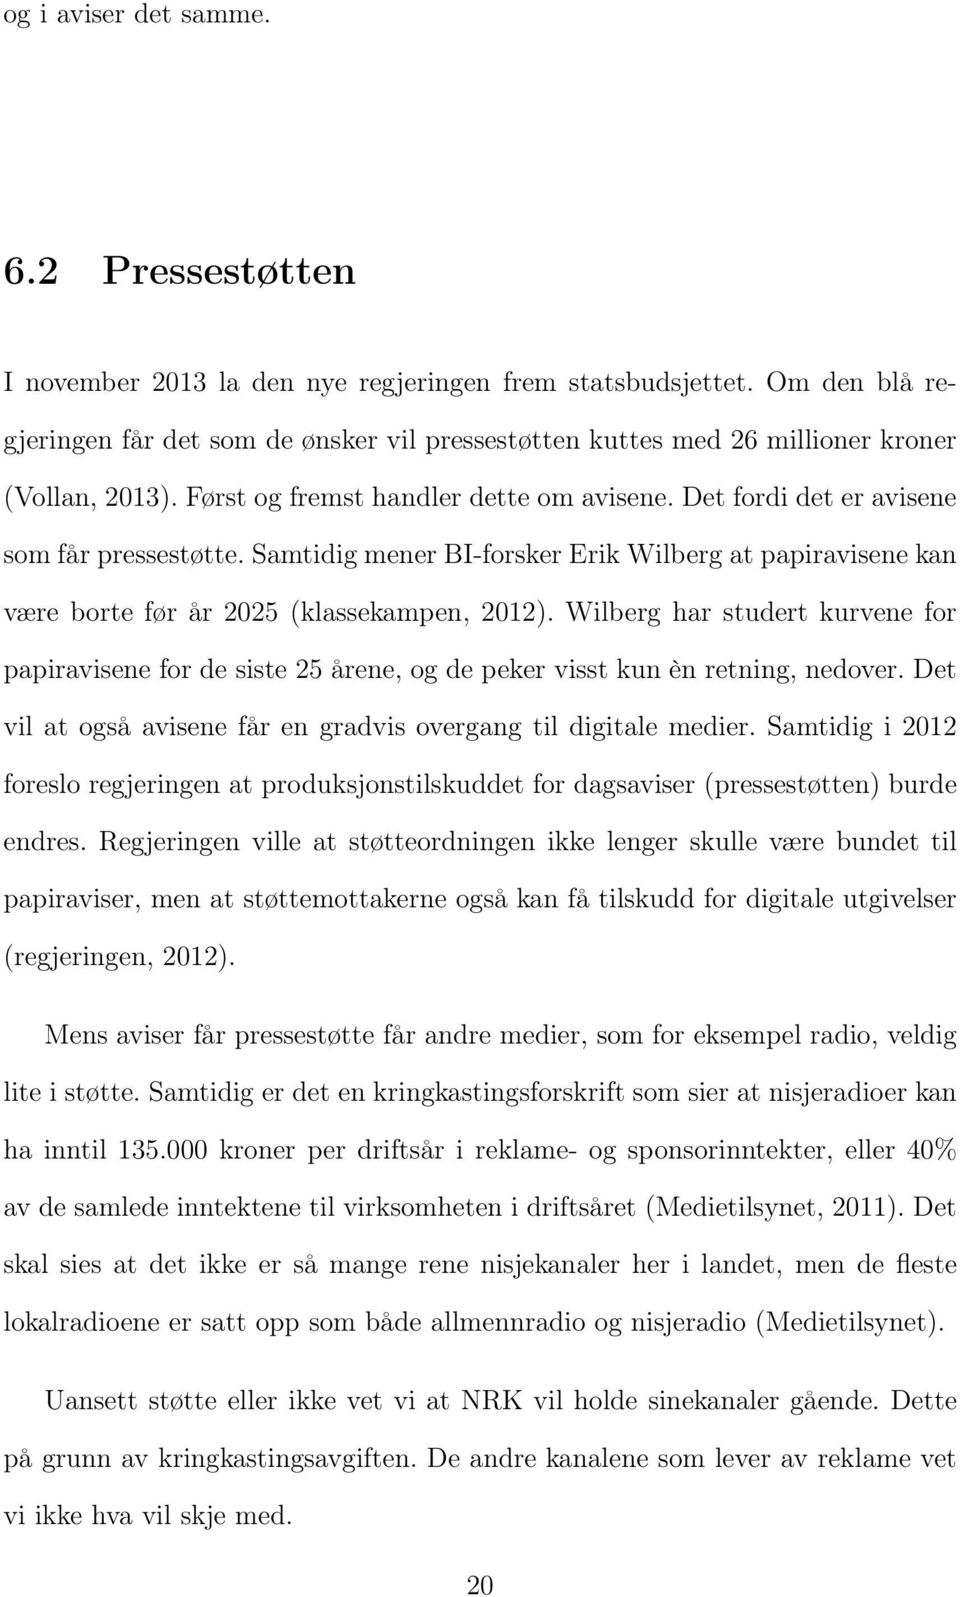 Samtidig mener BI-forsker Erik Wilberg at papiravisene kan være borte før år 2025 (klassekampen, 2012).